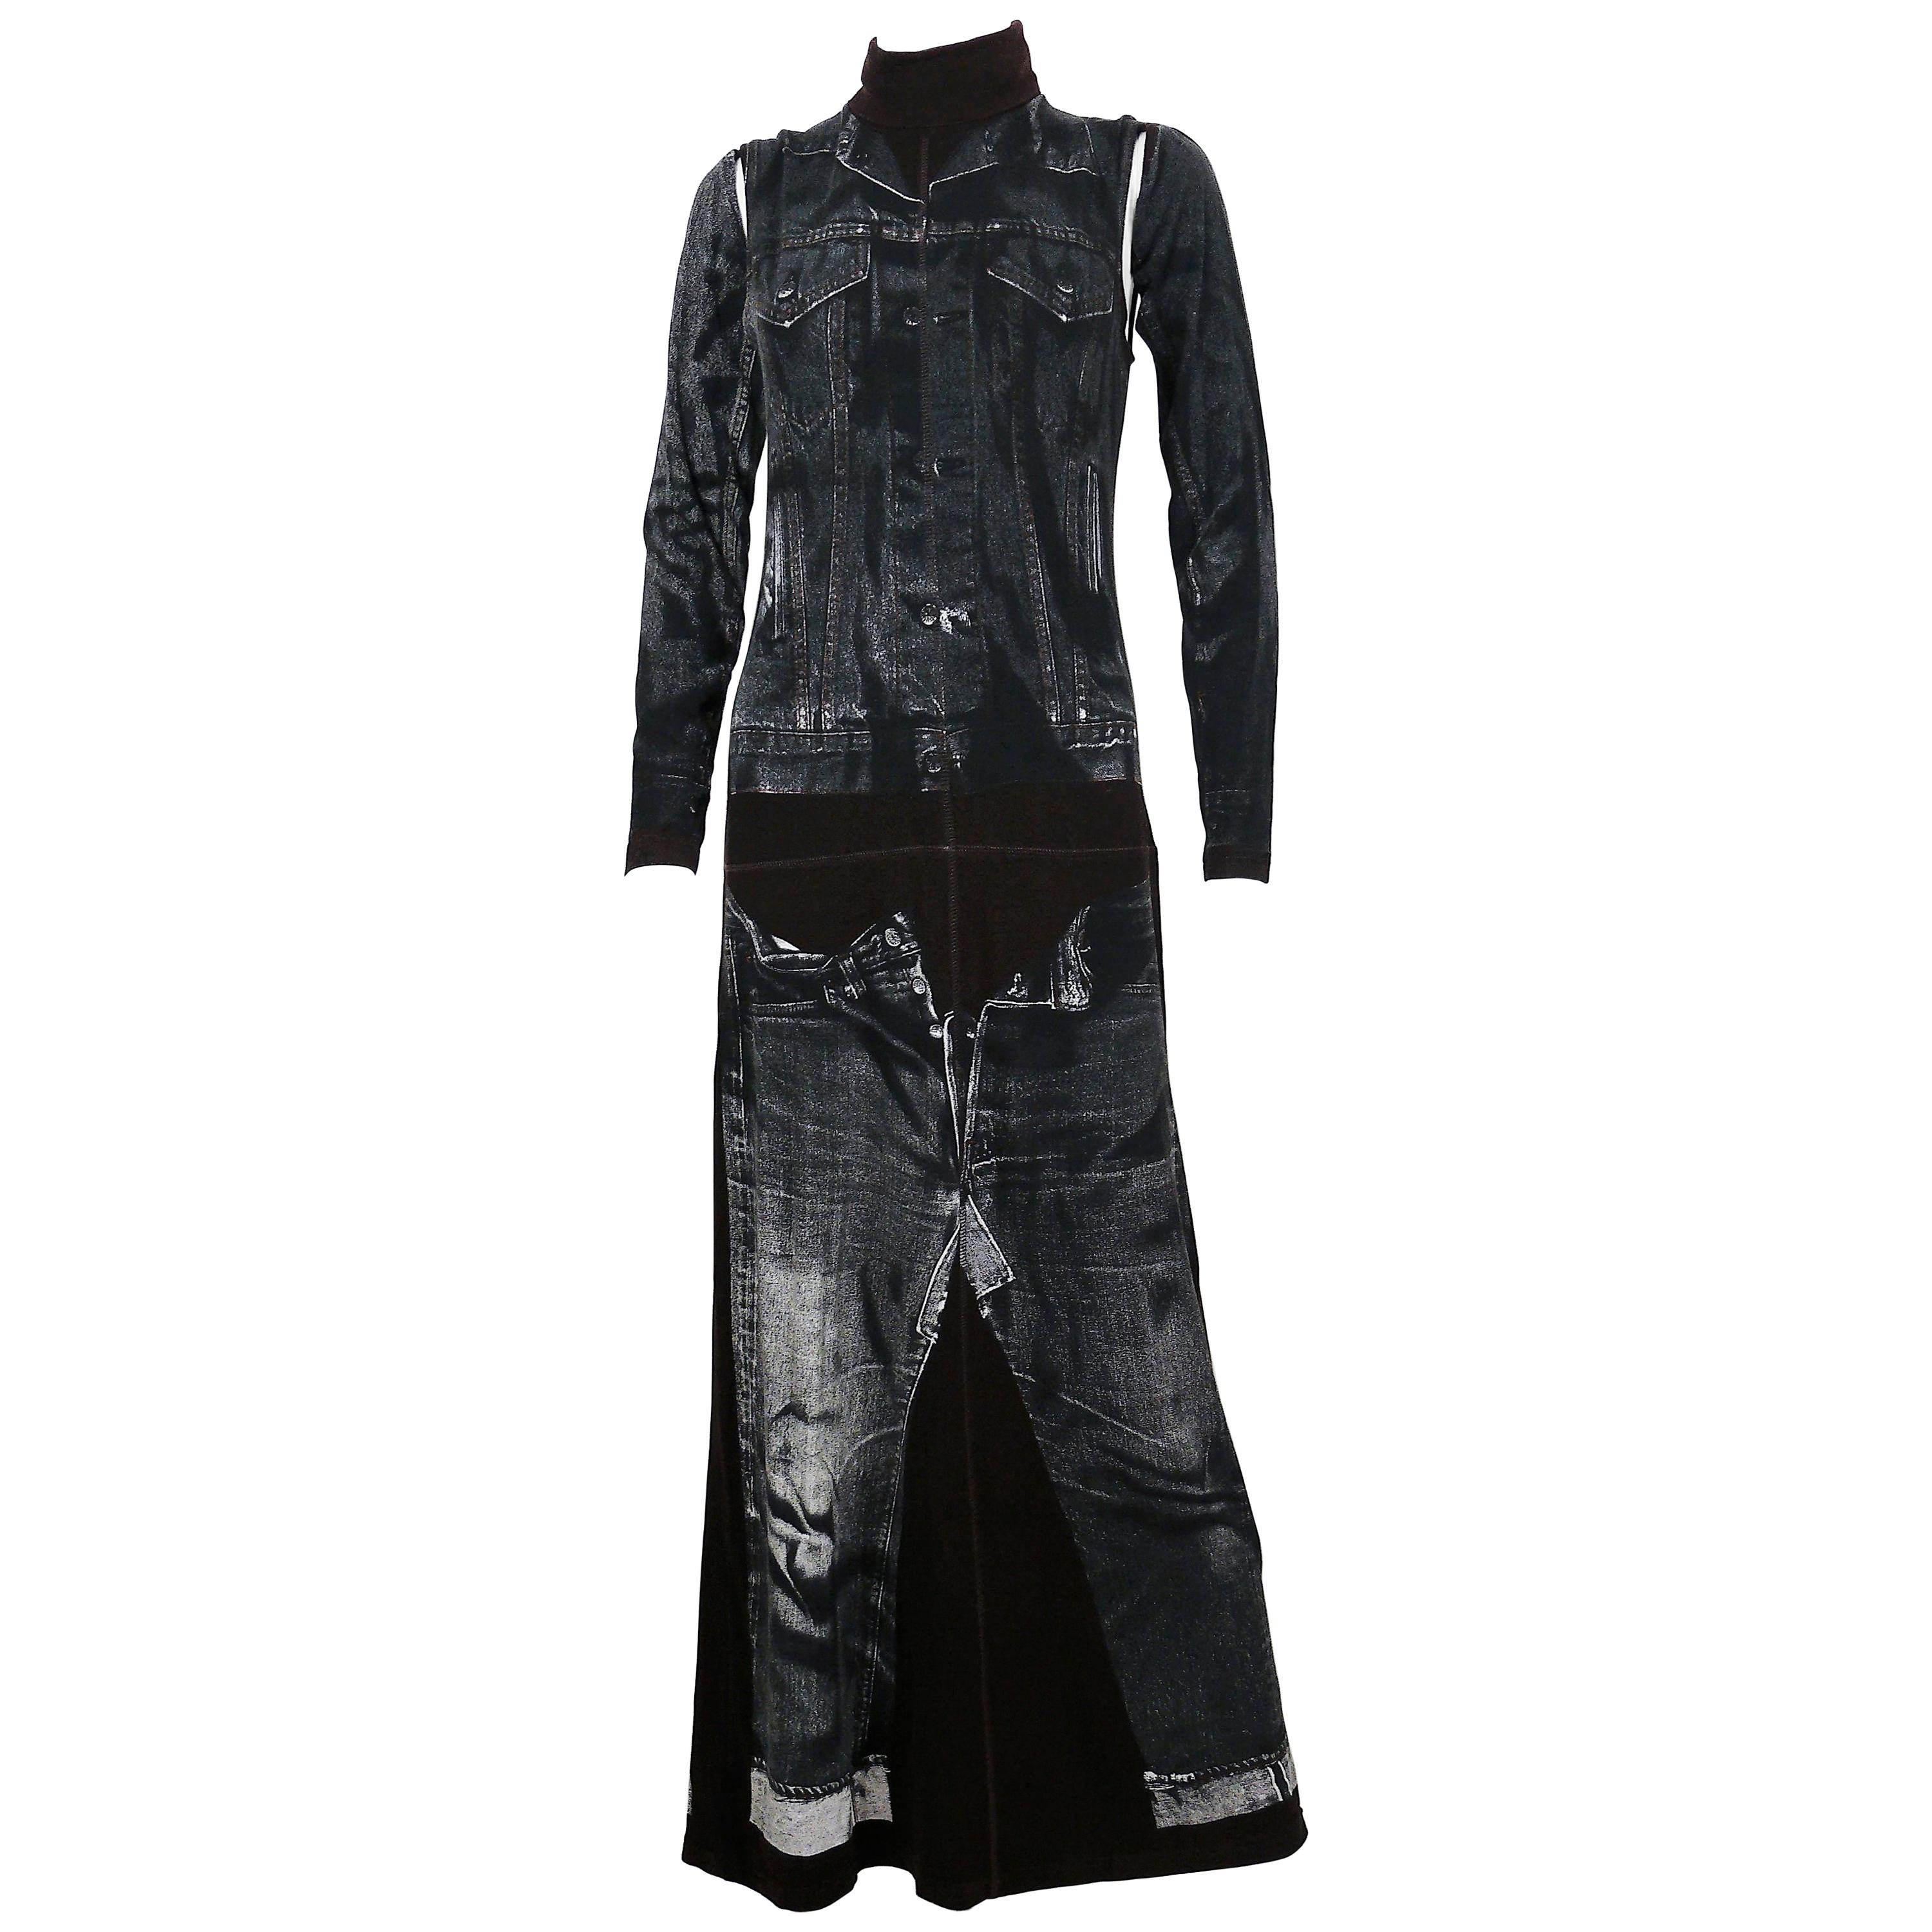 Jean Paul Gaultier Trompe L'oeil Maxi Dress with Detachable